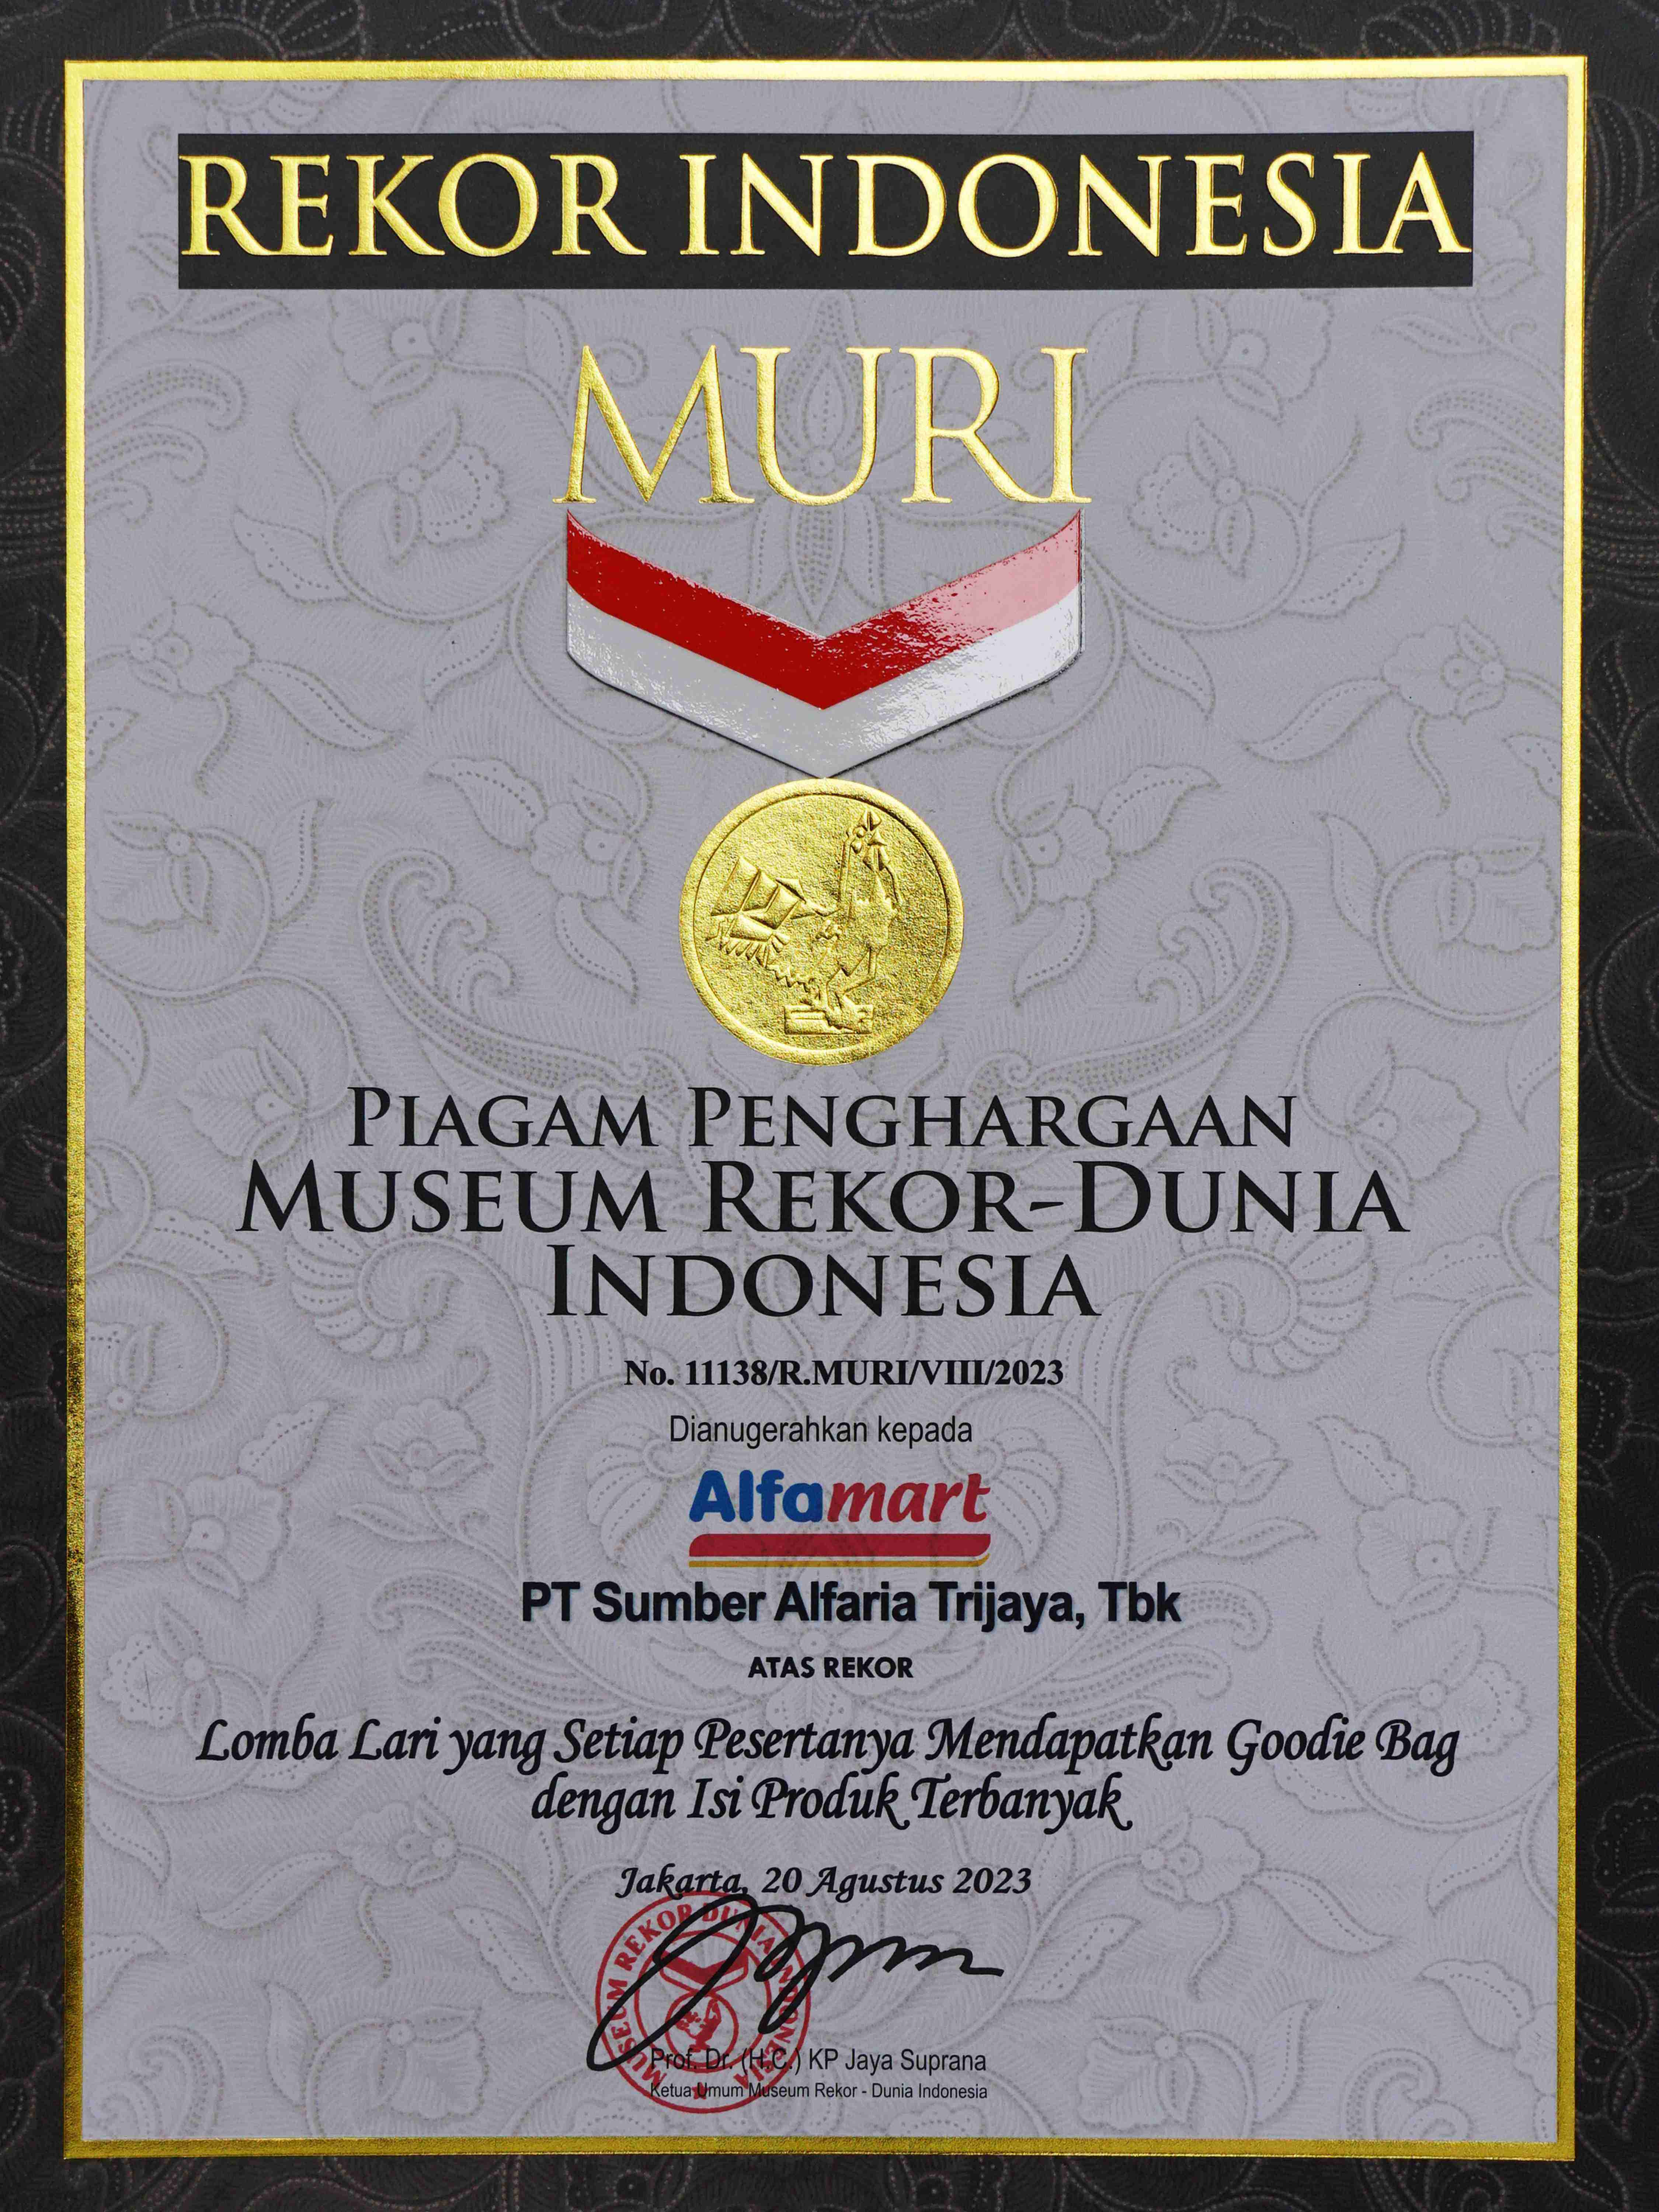 Image reward Penghargaan MURI: Lomba Lari yang Pesertanya Mendapatkan Goodie Bag dengan Isi Produk Terbanyak dari MURI